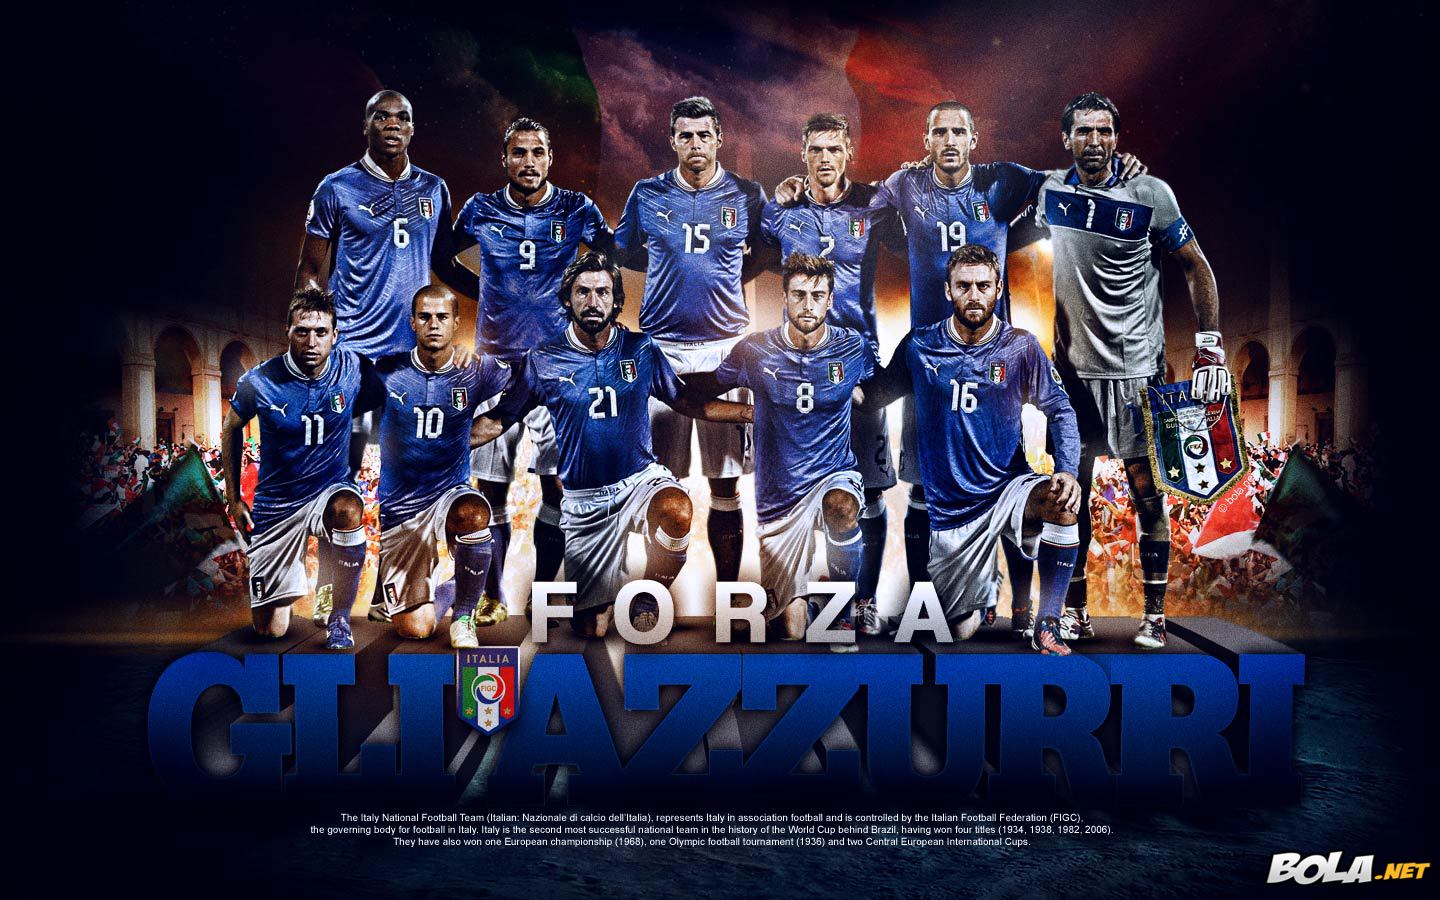 Deskripsi : Wallpaper Forza Azzurri, size: 1440x900